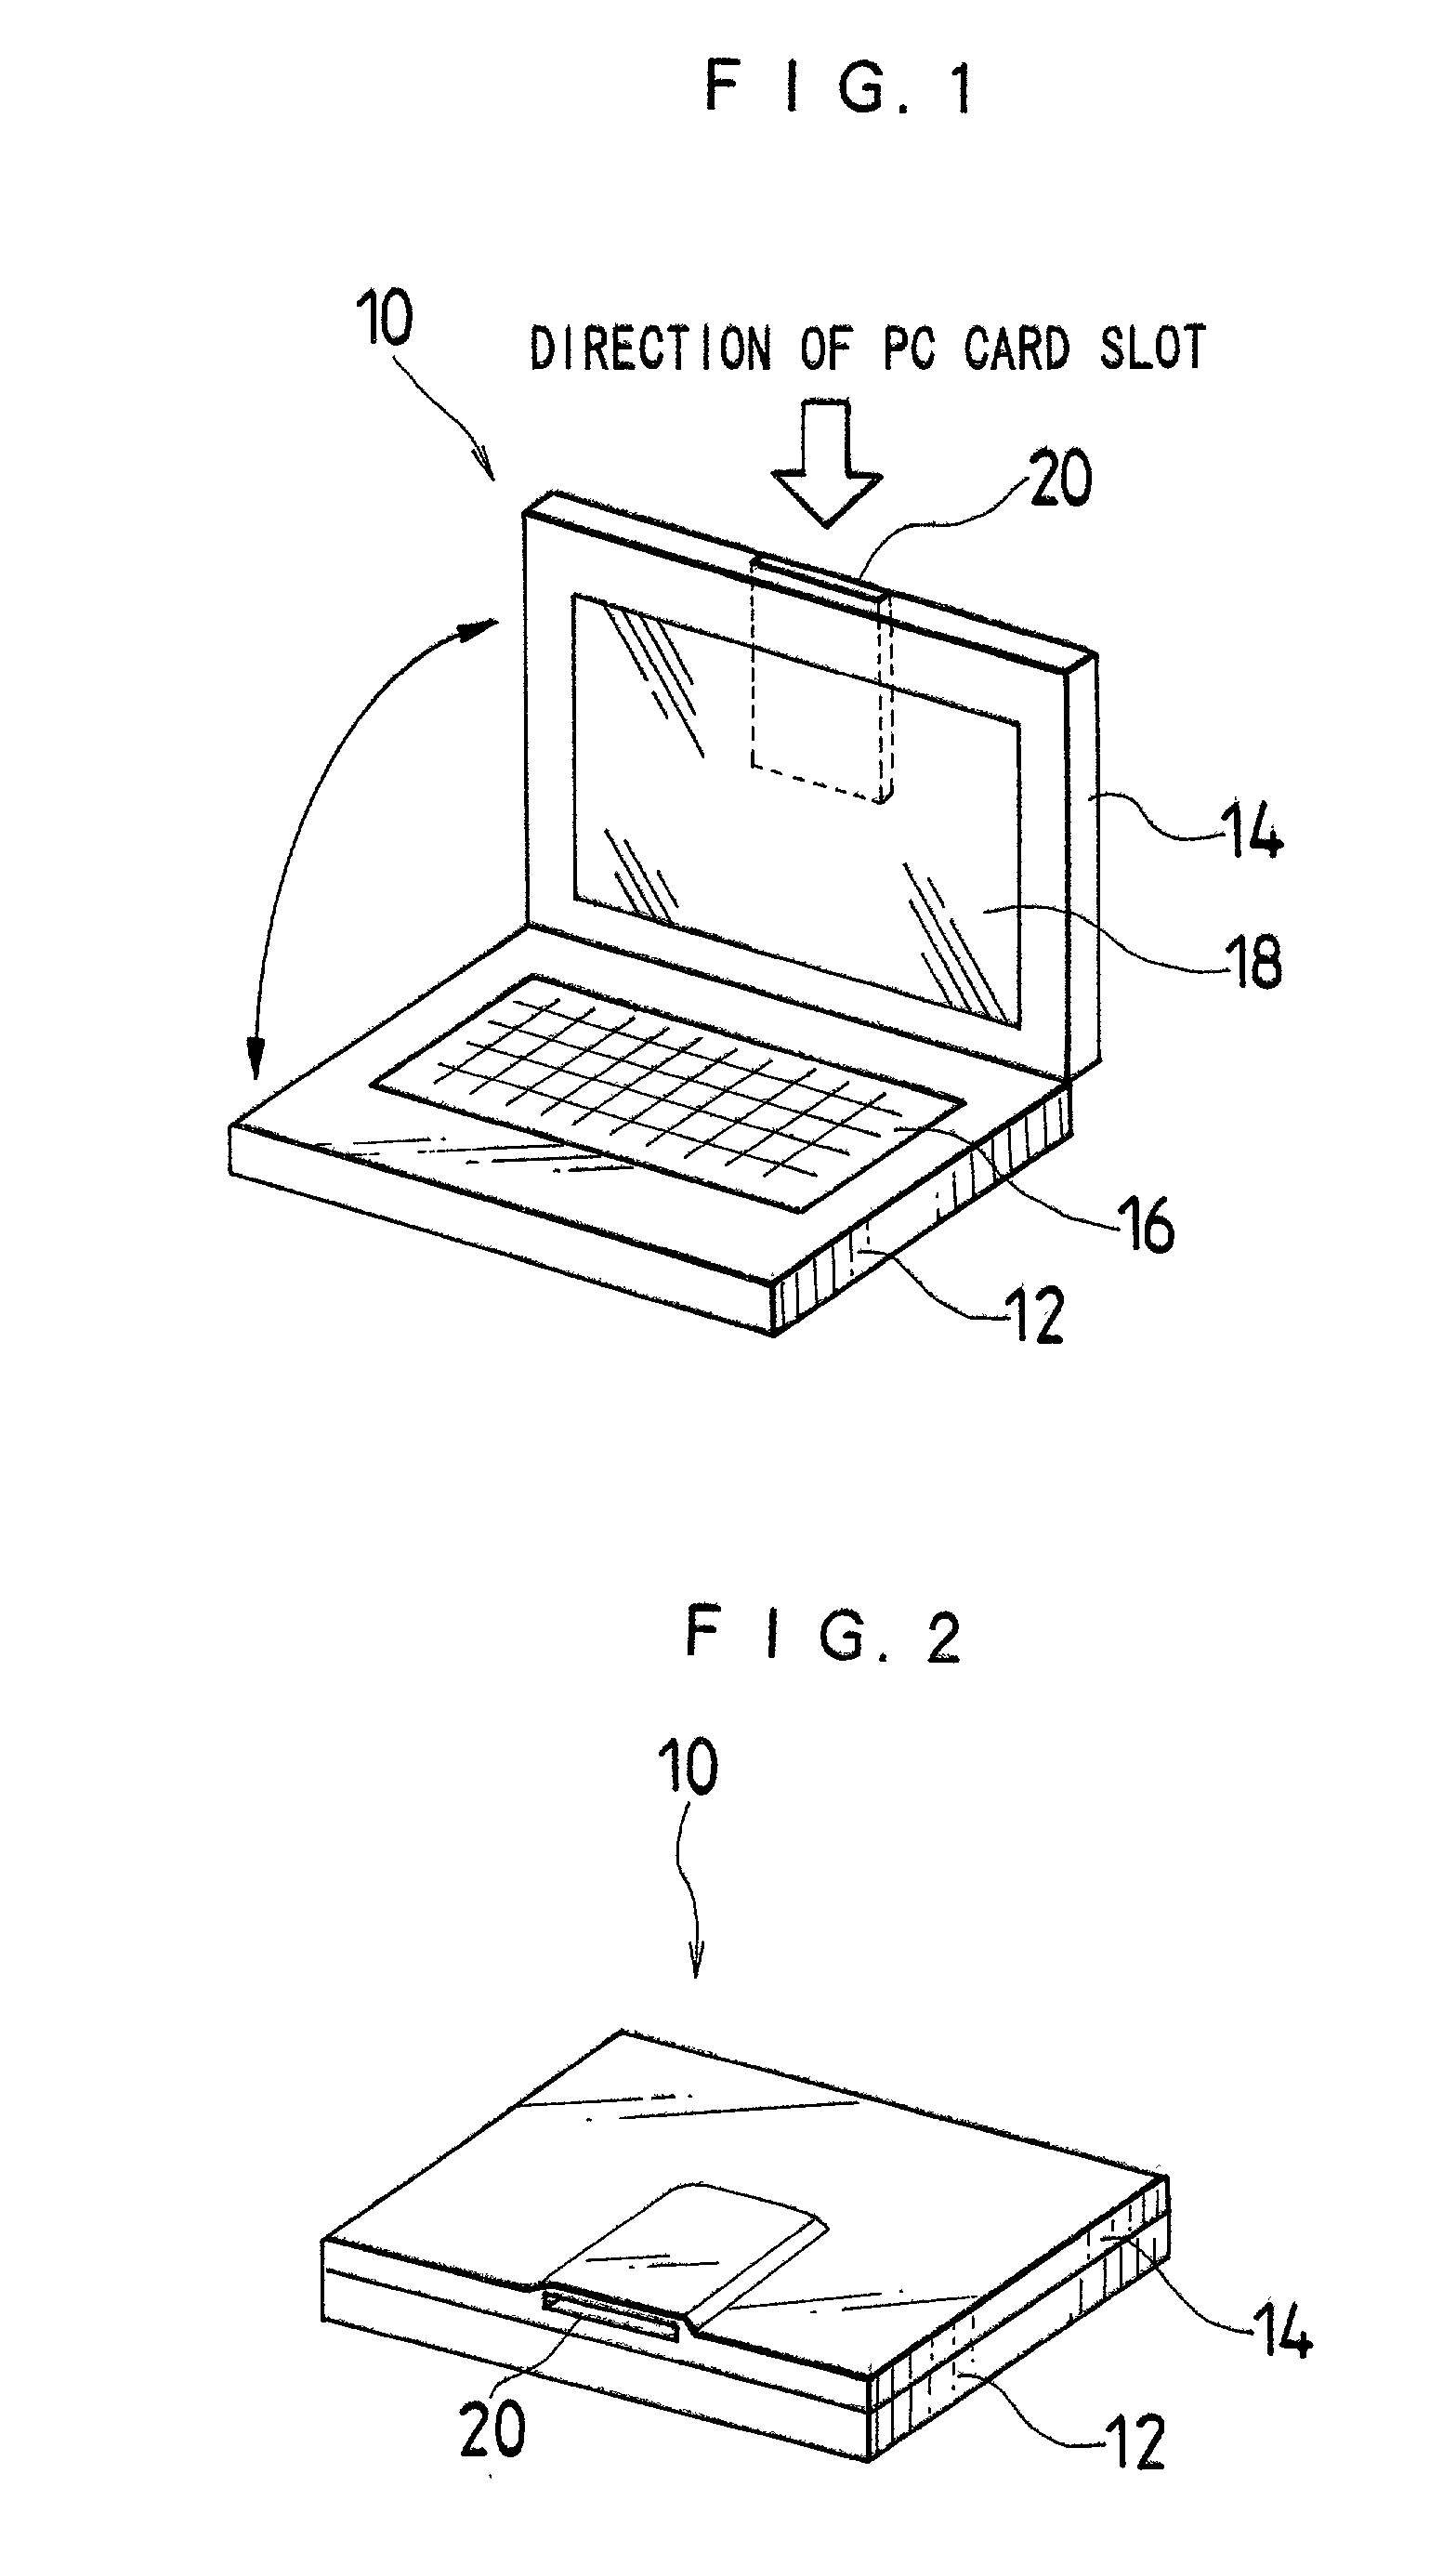 Arrangement of card slot in laptop computer